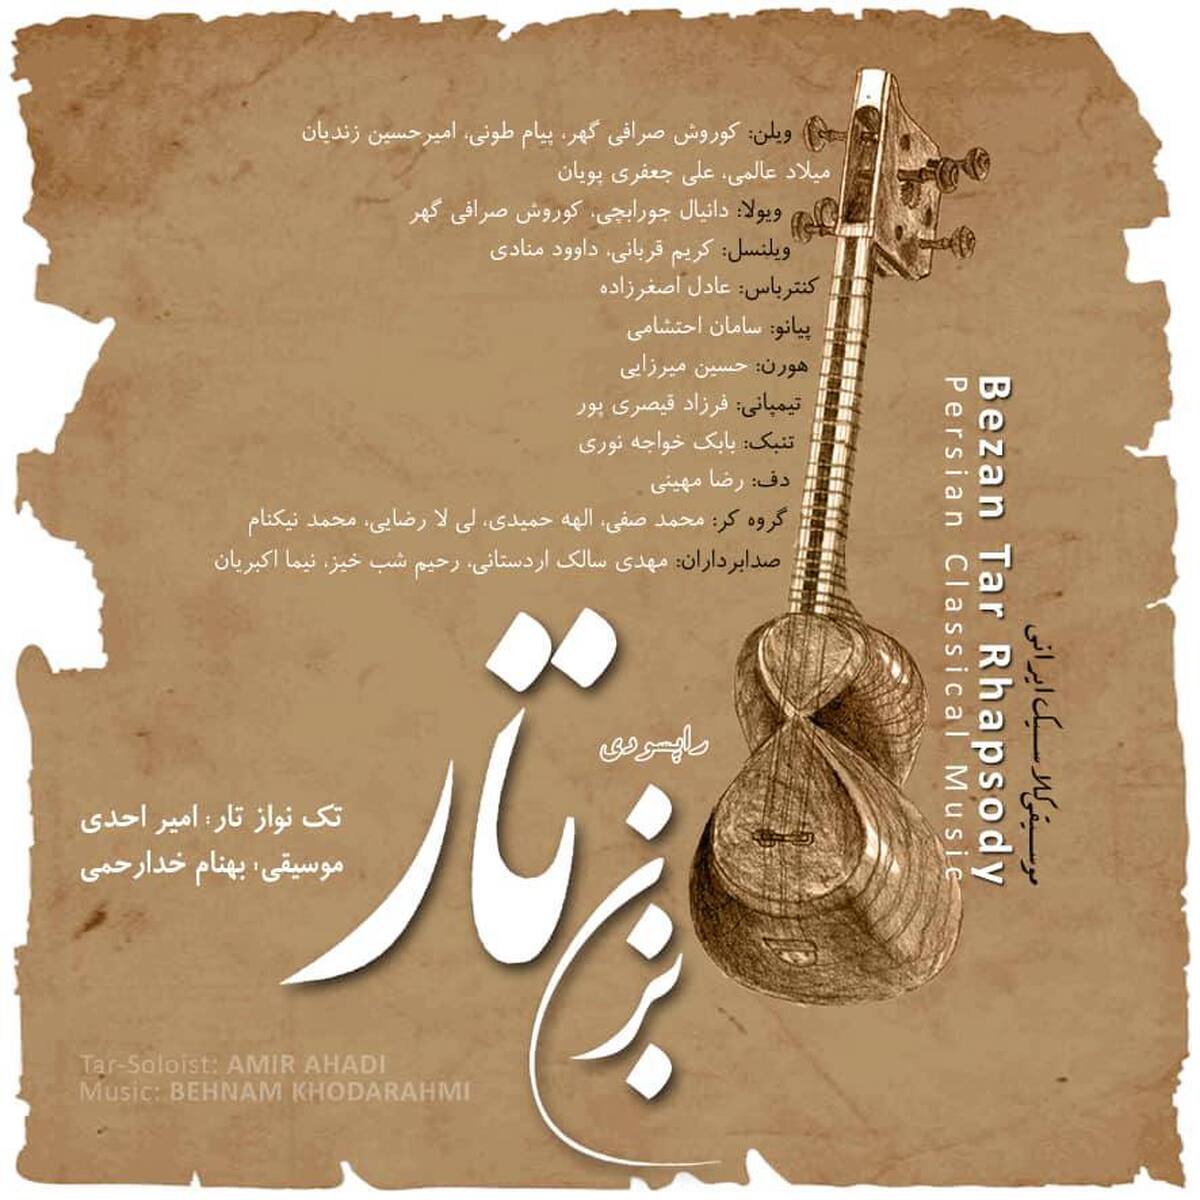 مدال فستیوال جوایز موسیقی جهانی به هنرمند ایرانی رسید